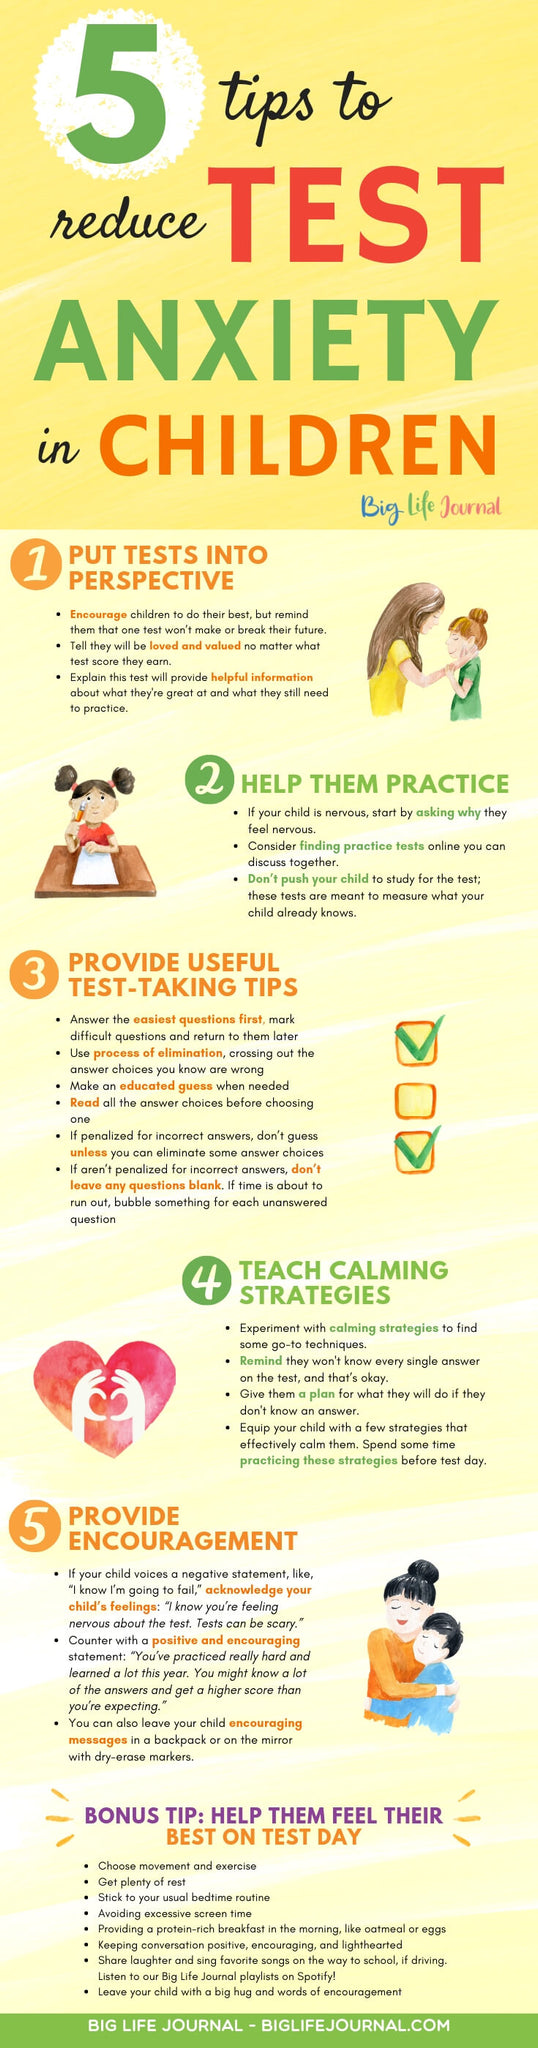 5 Suggerimenti per ridurre l'ansia da test nei bambini